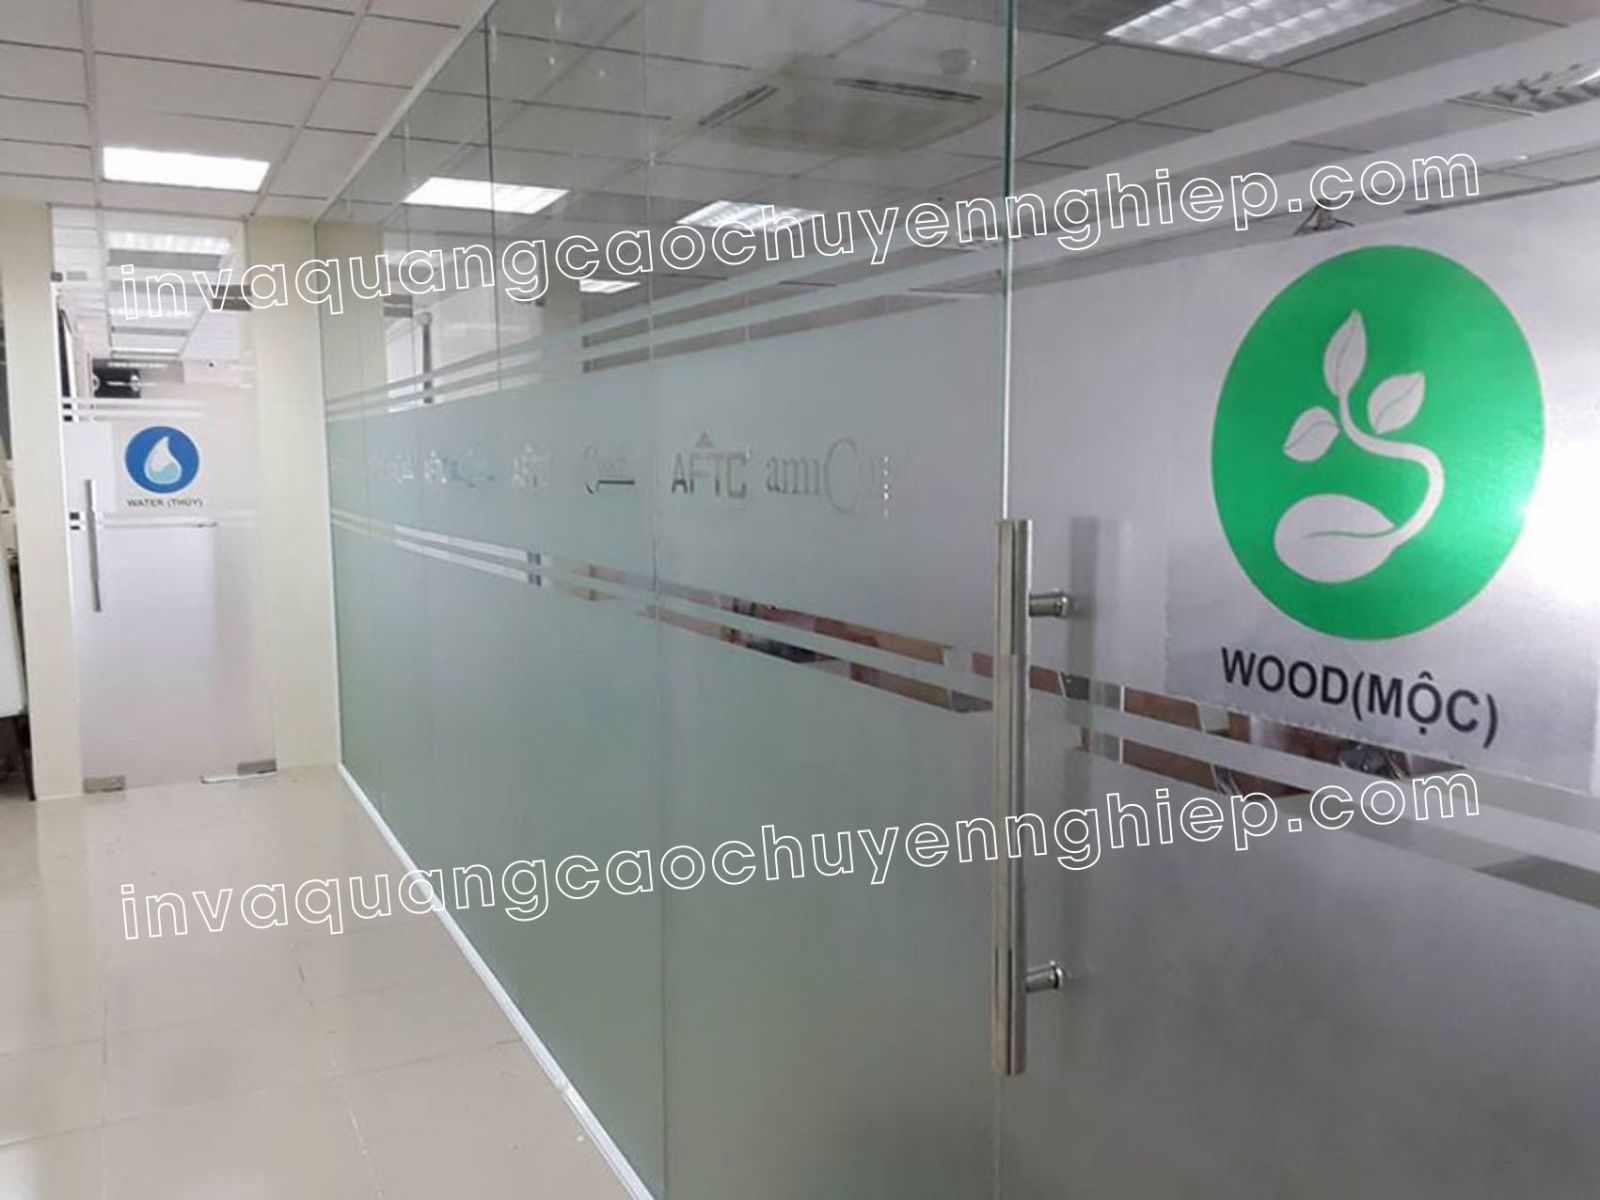 Chuyên thiết kế thi công dán kính mờ văn phòng tại Hà Nội. Lên market miễn phí 